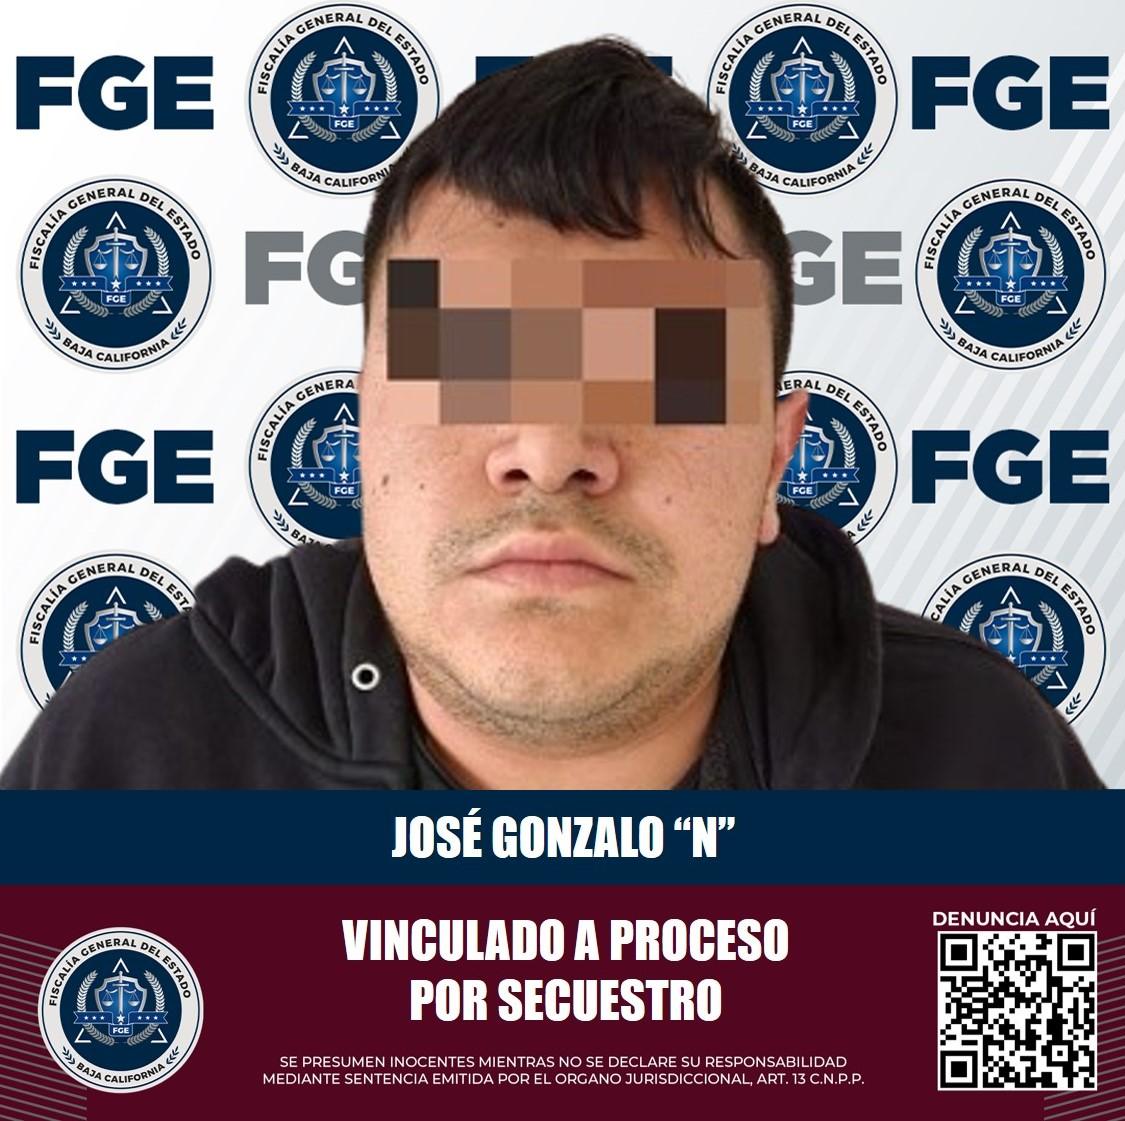 Investigación de la FGE lleva a la vinculación a proceso de un presunto secuestrador